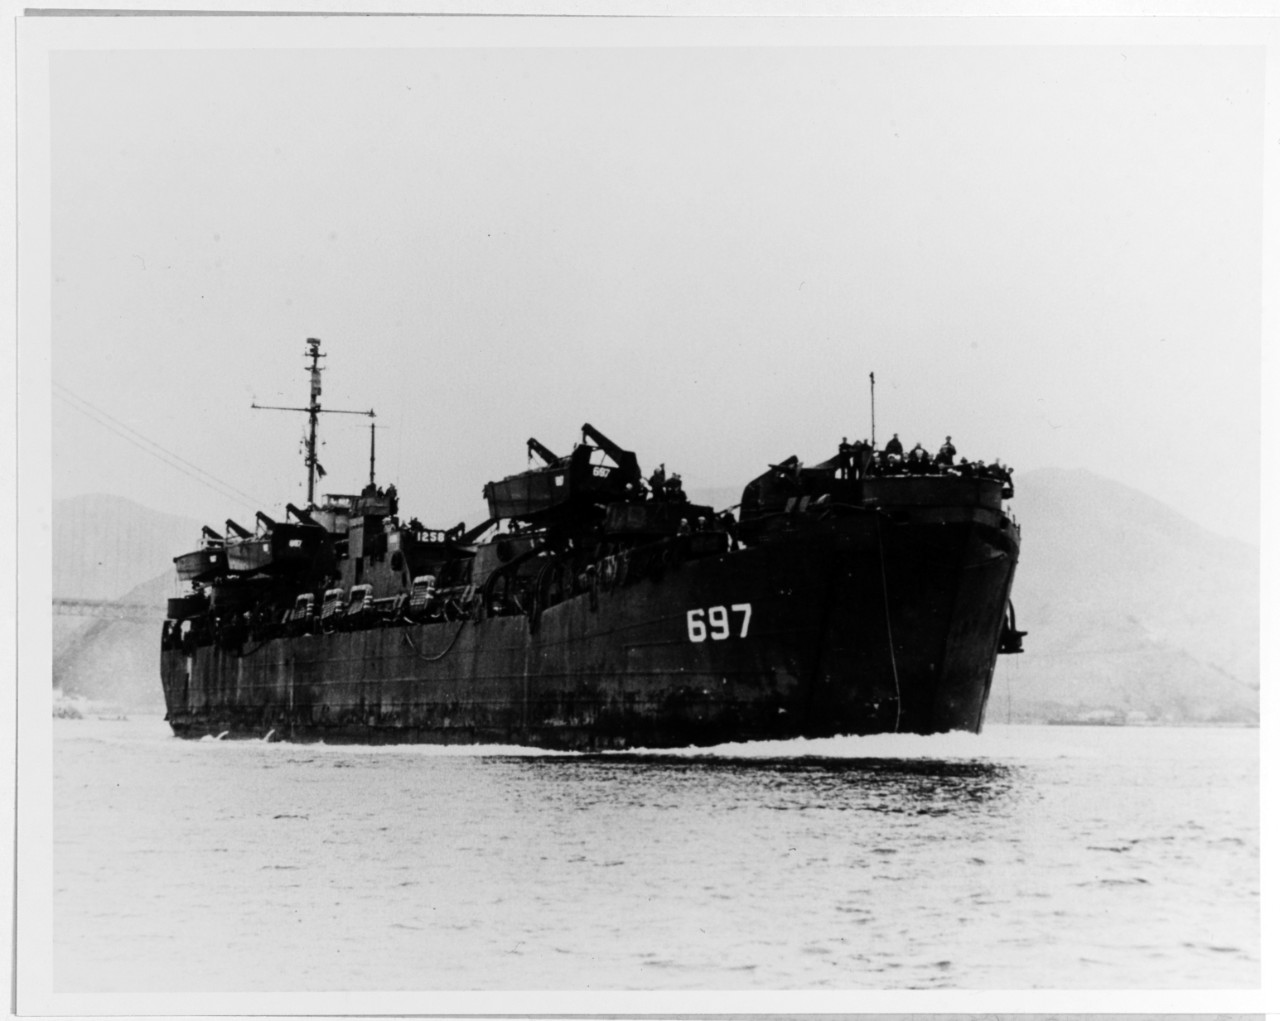 USS LST-697